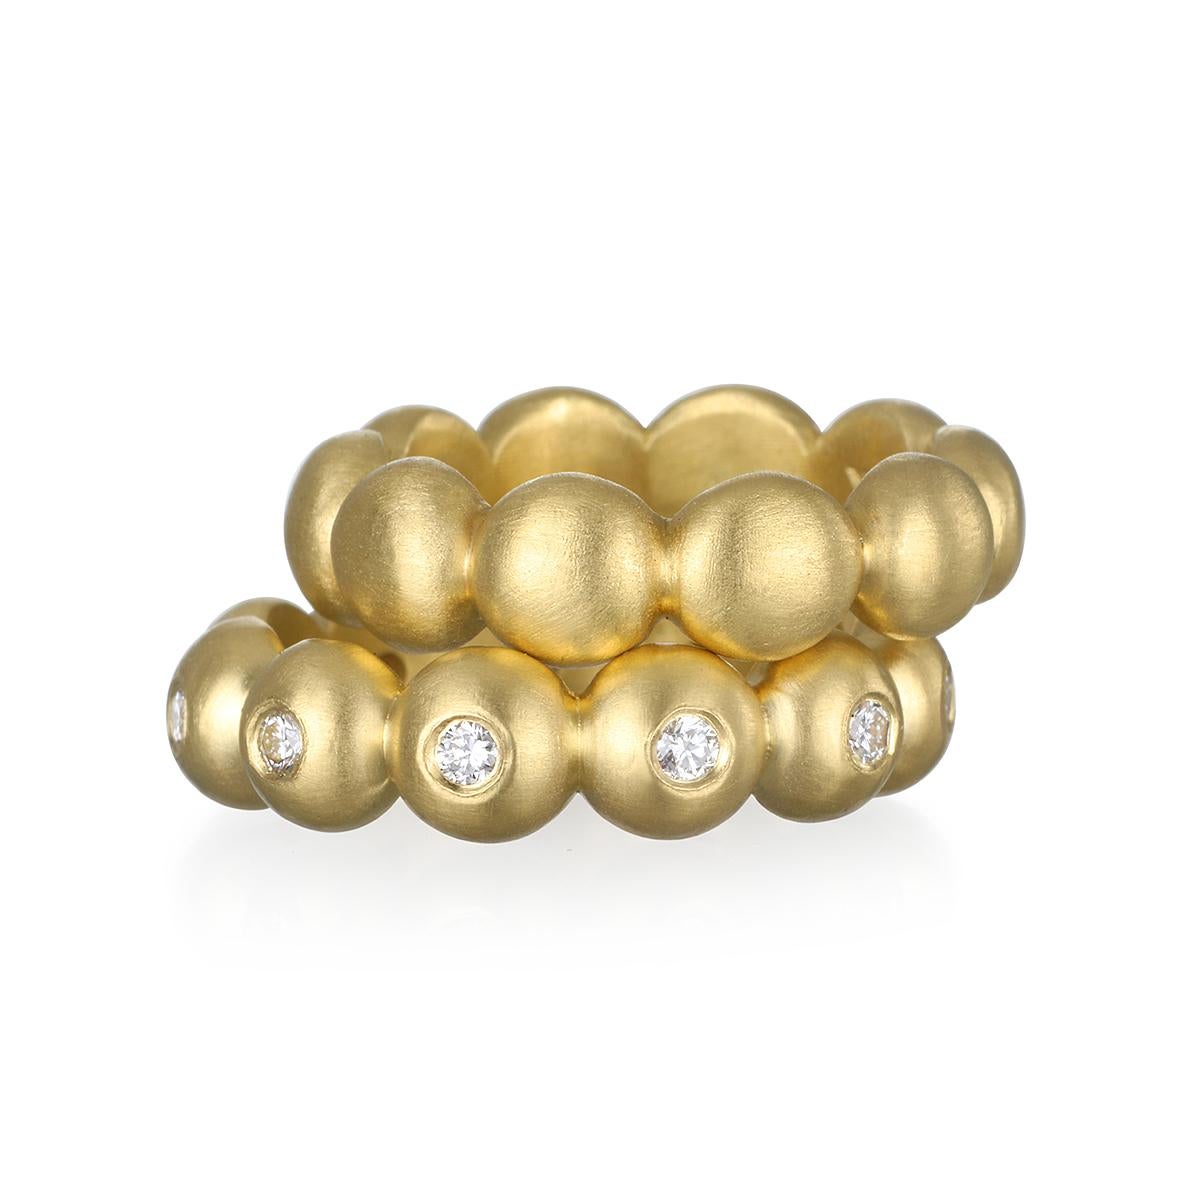 Als Teil von Faye Kims signifikanter Kollektion aus 18-karätigem Gold sind die großen Granulatperlen mit runden Diamanten im Brillantschliff verziert und mattiert, um einen klaren, modernen Look zu erzielen. Perfekt zum Stapeln mit anderen Ringen